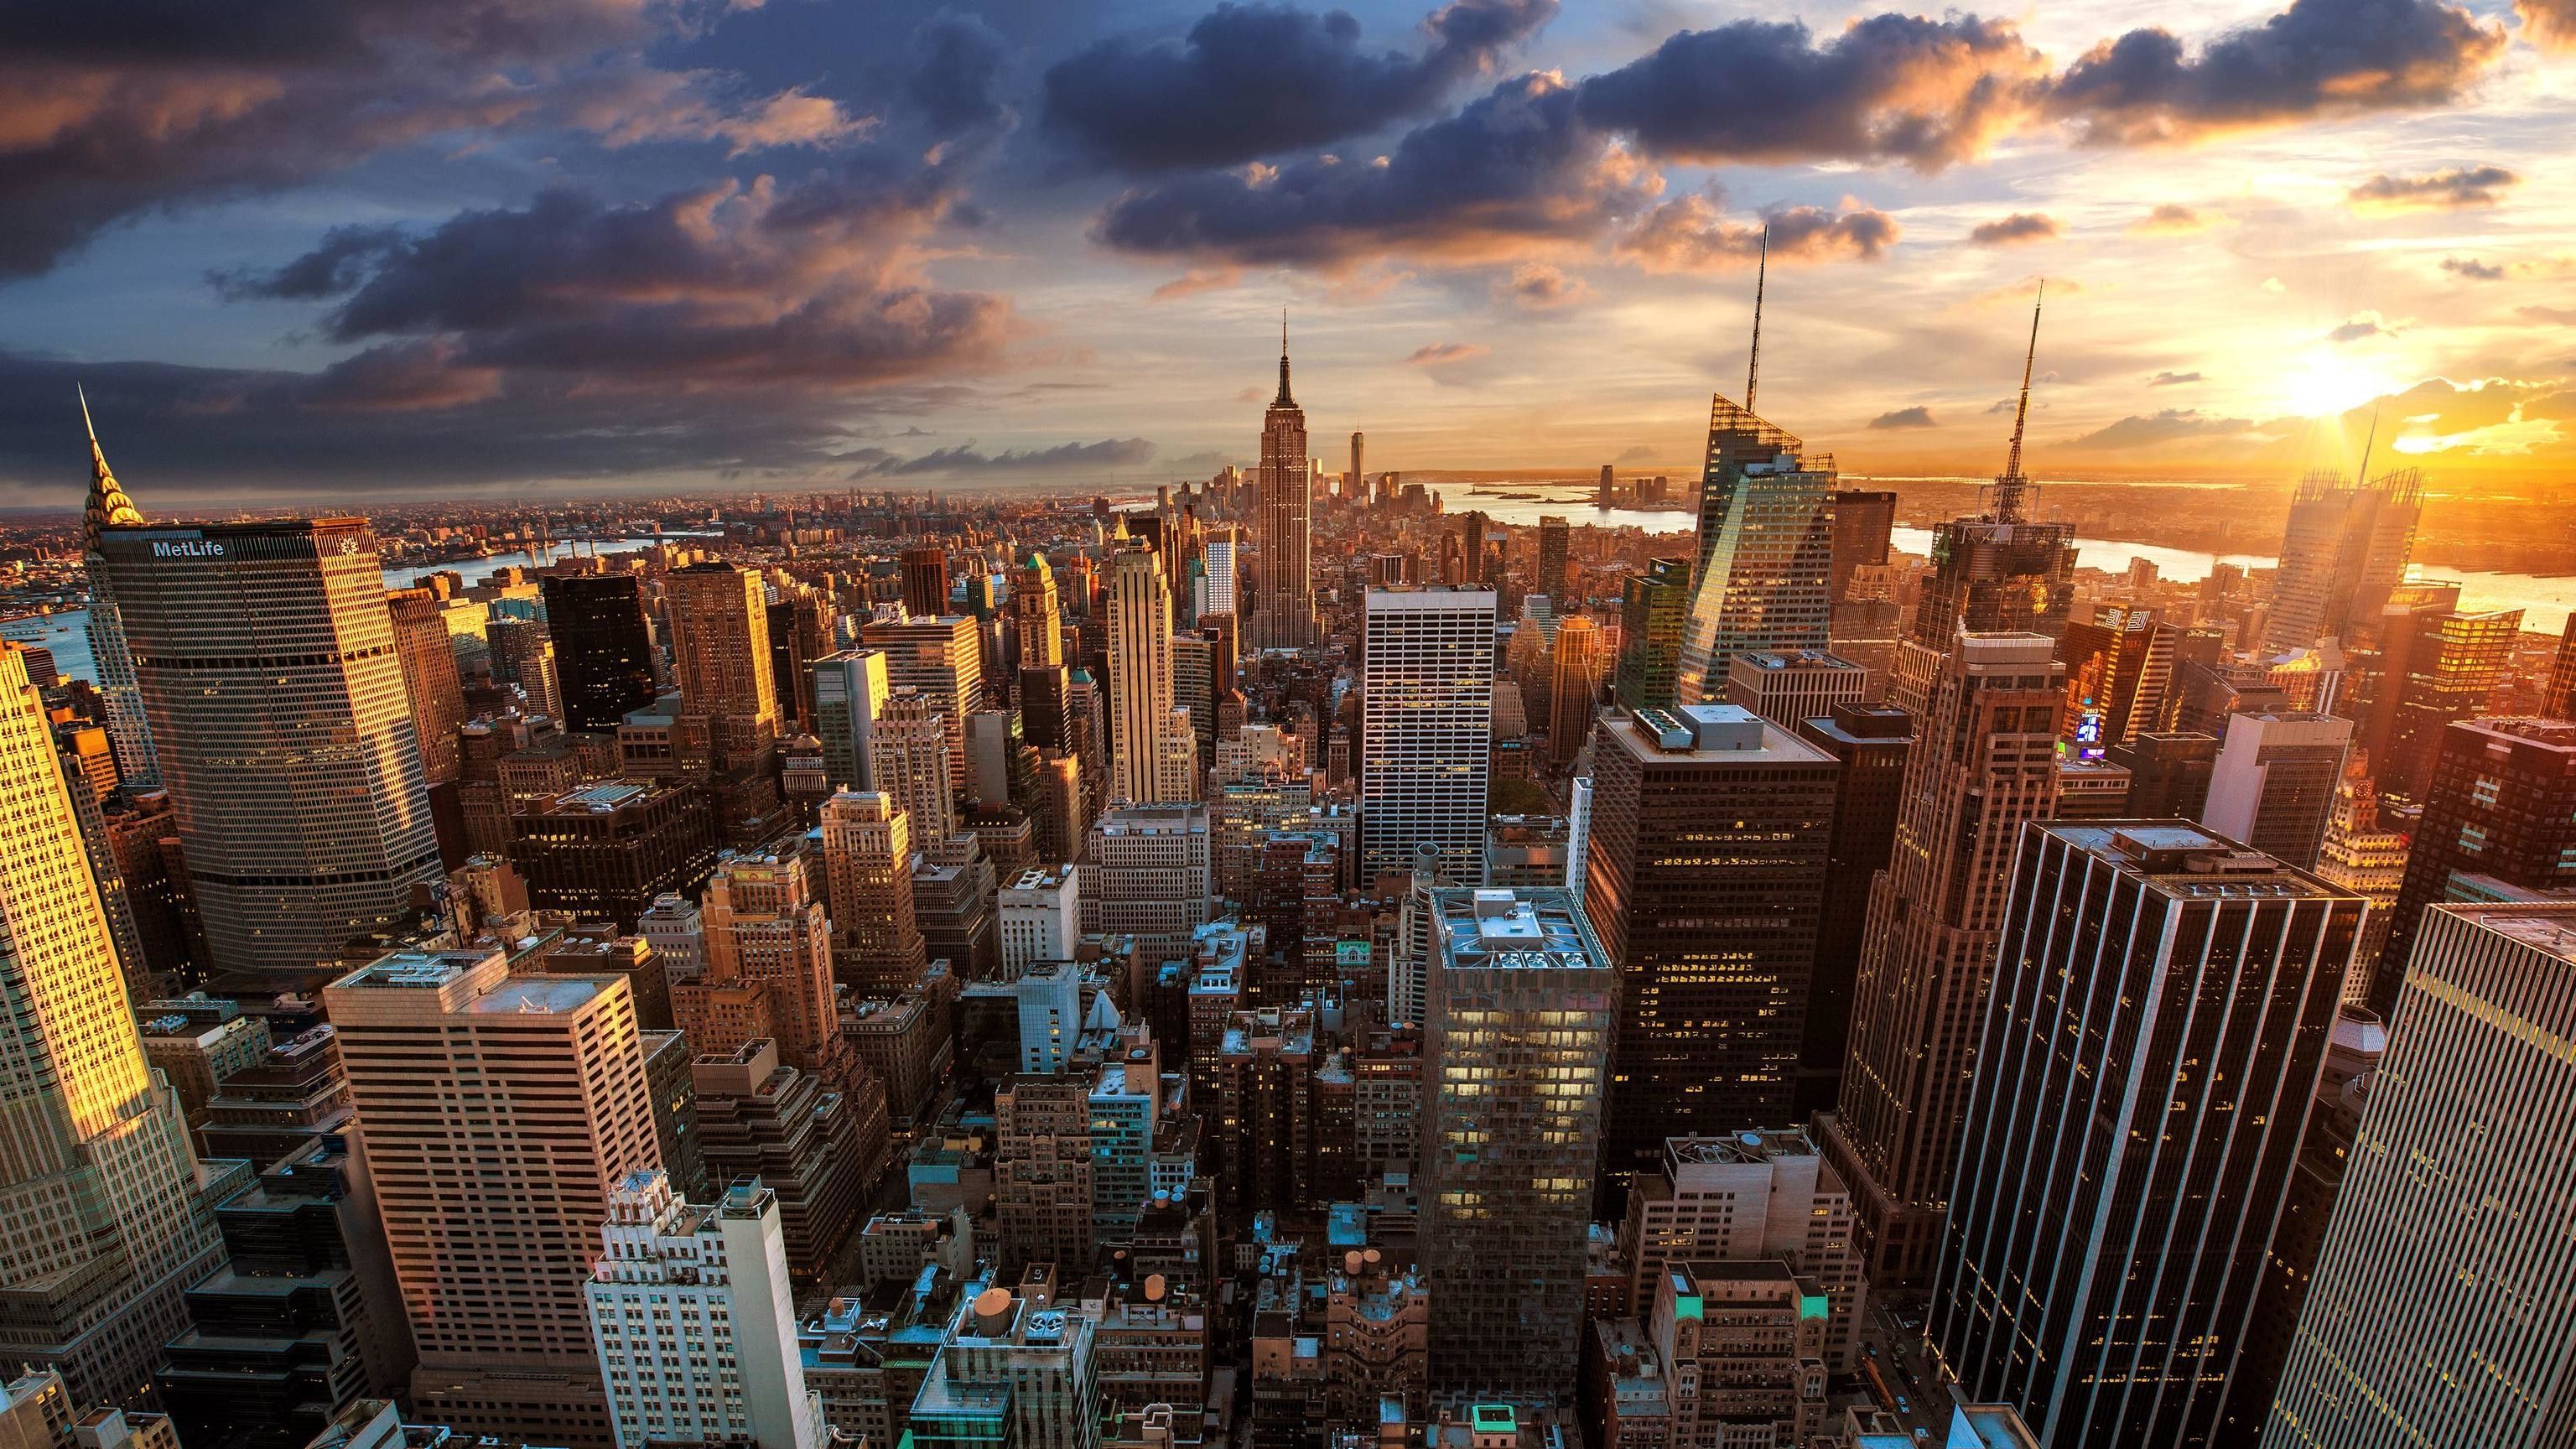 Hình nền New York City sẽ đưa bạn vào trung tâm của Manhattan với những tòa nhà cao chọc trời, những đường phố sầm uất và những cảnh quan tuyệt đẹp quanh năm. Bạn sẽ bất ngờ khi thấy sự tinh tế và chi tiết trong mỗi hình nền này.